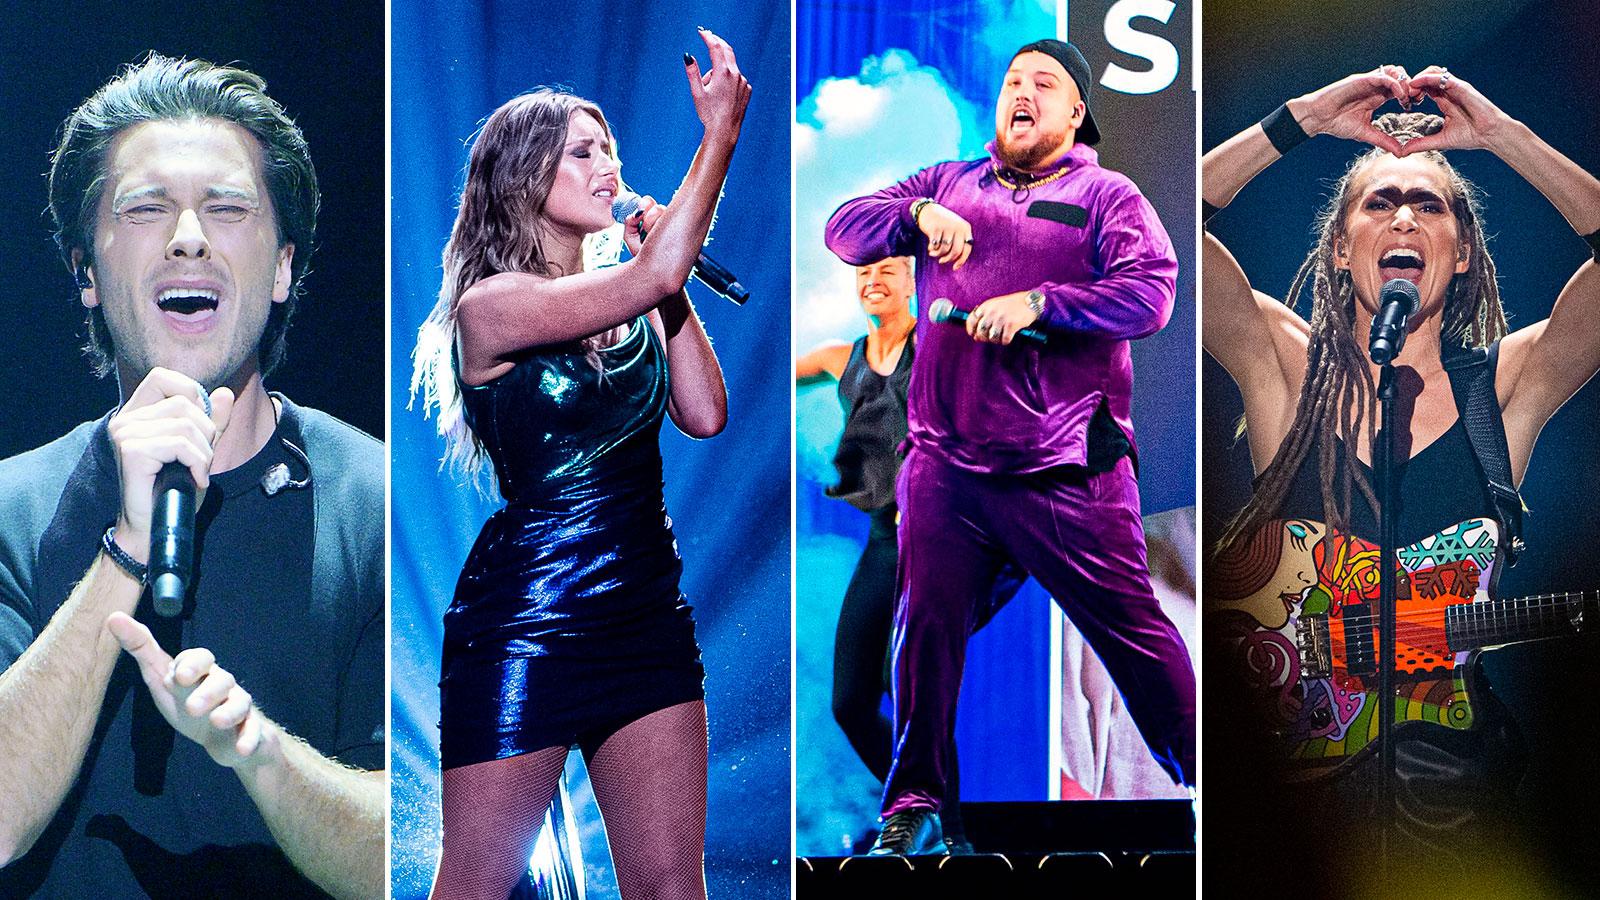 Victor Crone, Hanna Ferm, Anis Don Demina och Mariette är fyra av artisterna i finalen av Melodifestivalen 2020.